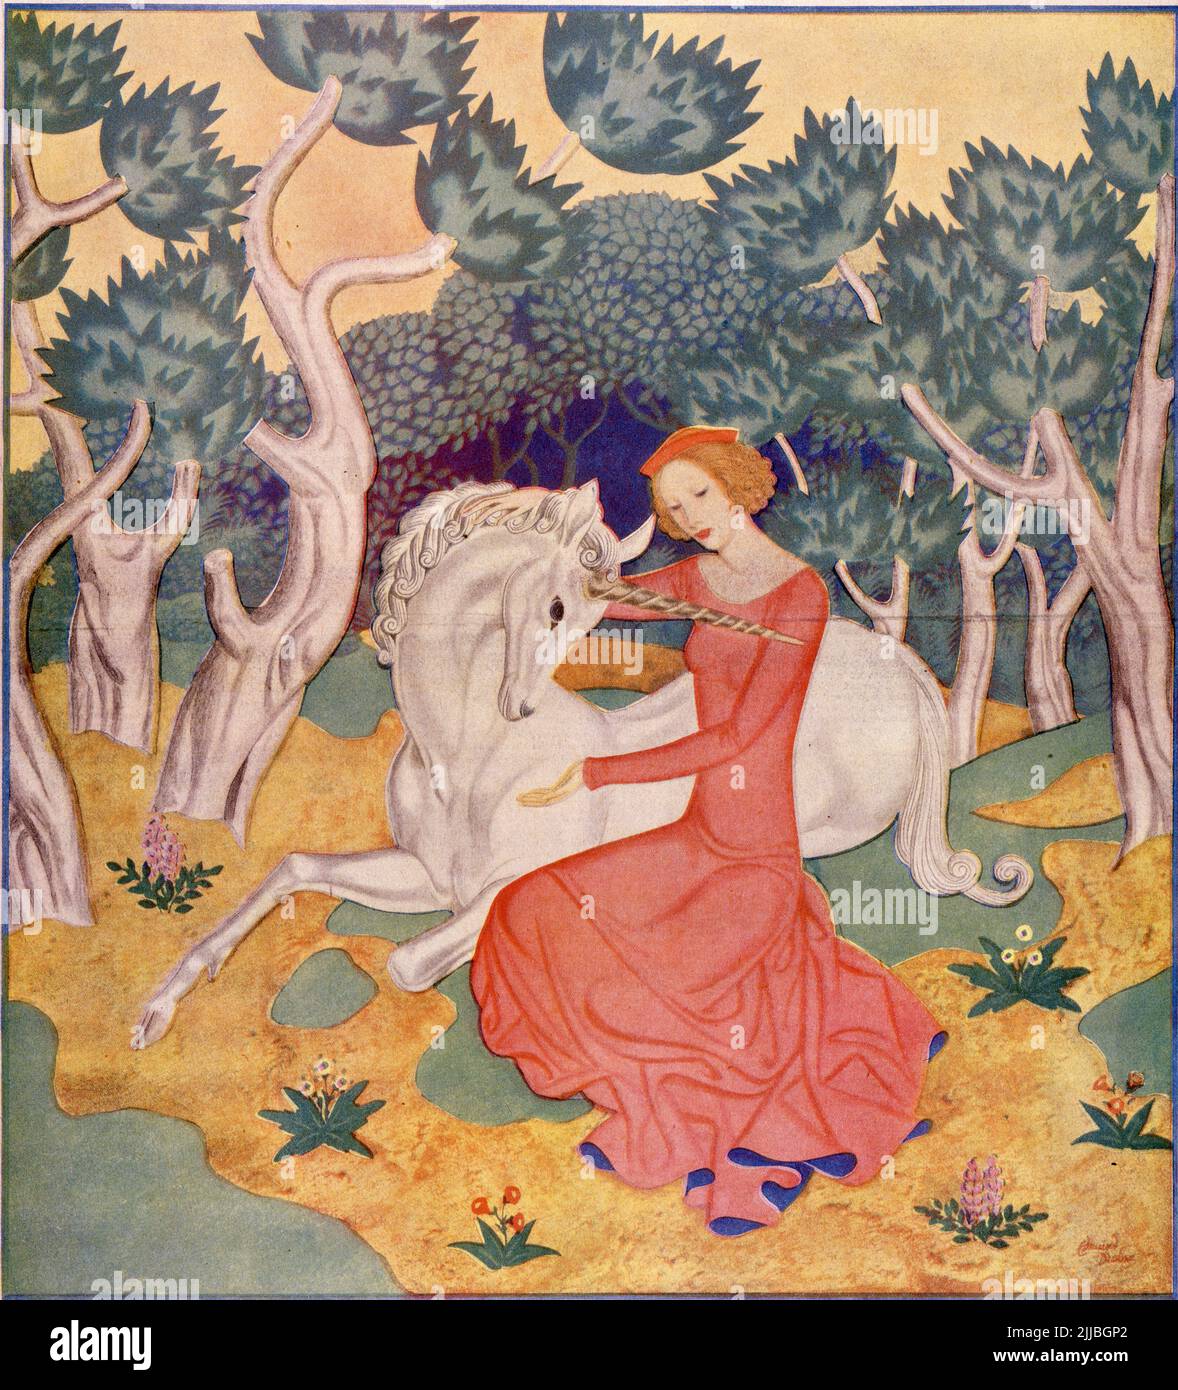 « The Maid and the Unicorn », publié 25 avril 1937 dans le magazine American Weekly, illustré par Edmund Dulac pour la série « la beauté et la bête » Banque D'Images